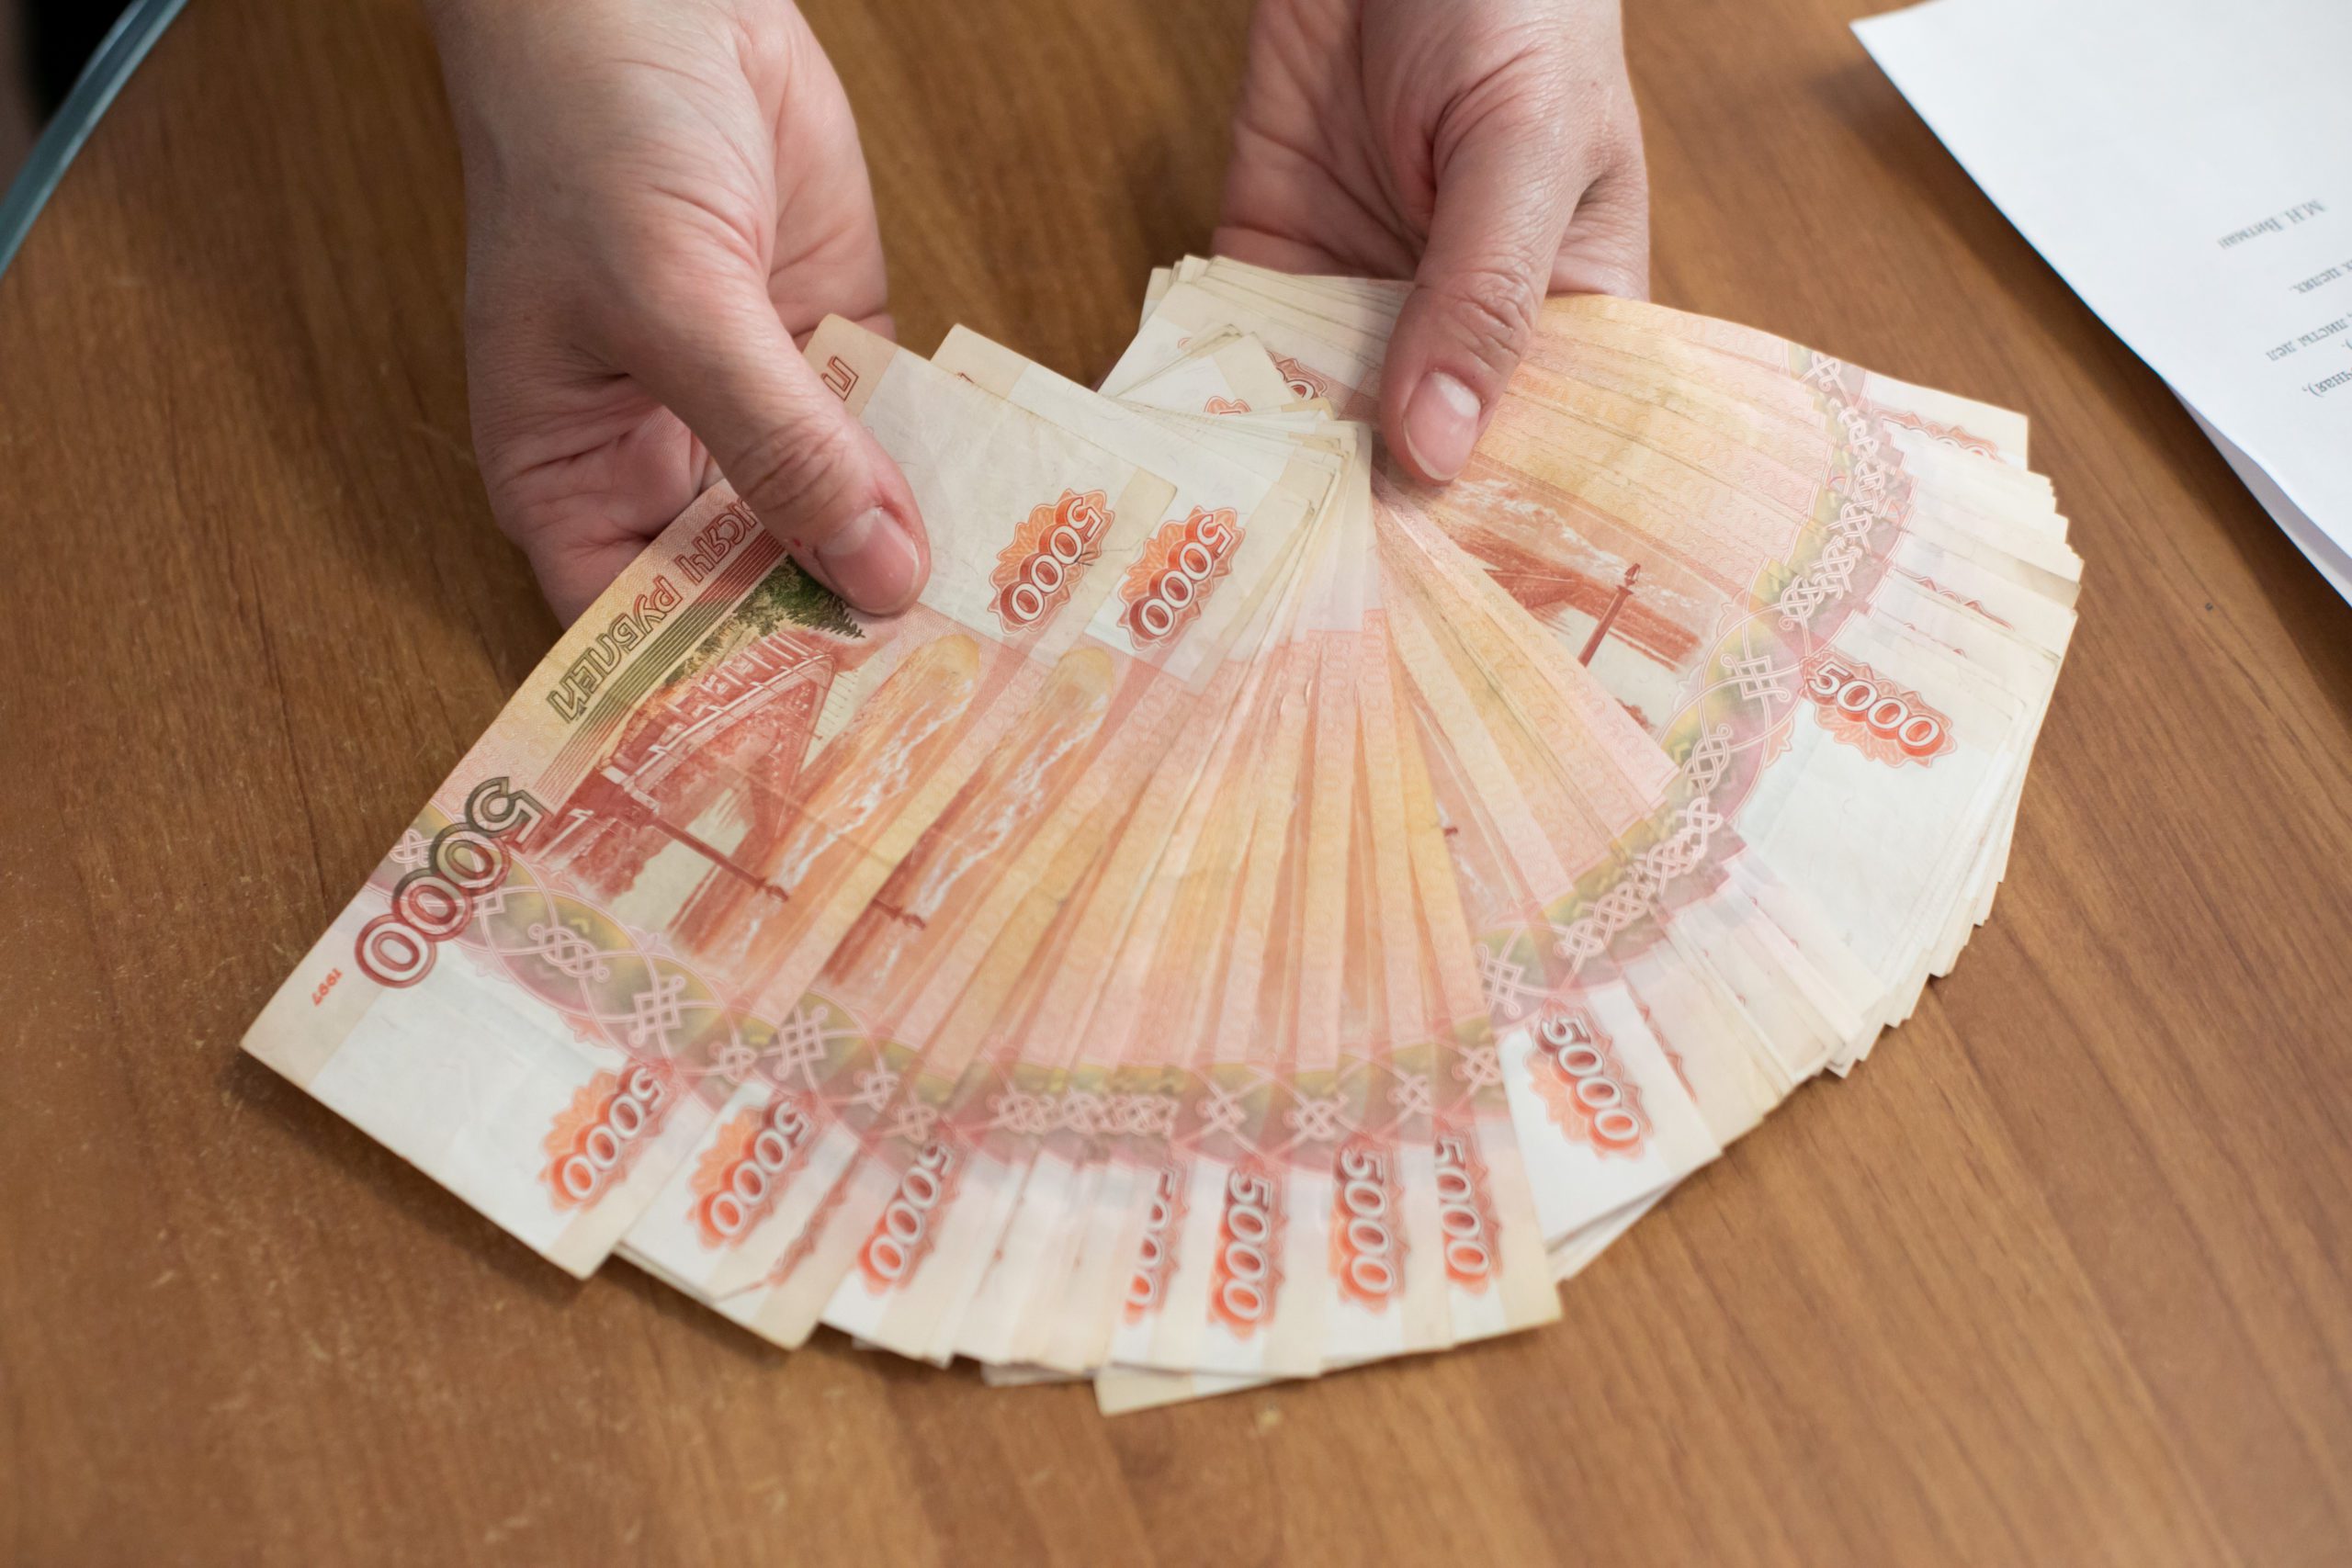 Жительница Кузбасса хотела получить компенсацию за БАДы и лишилась около 600 тысяч рублей